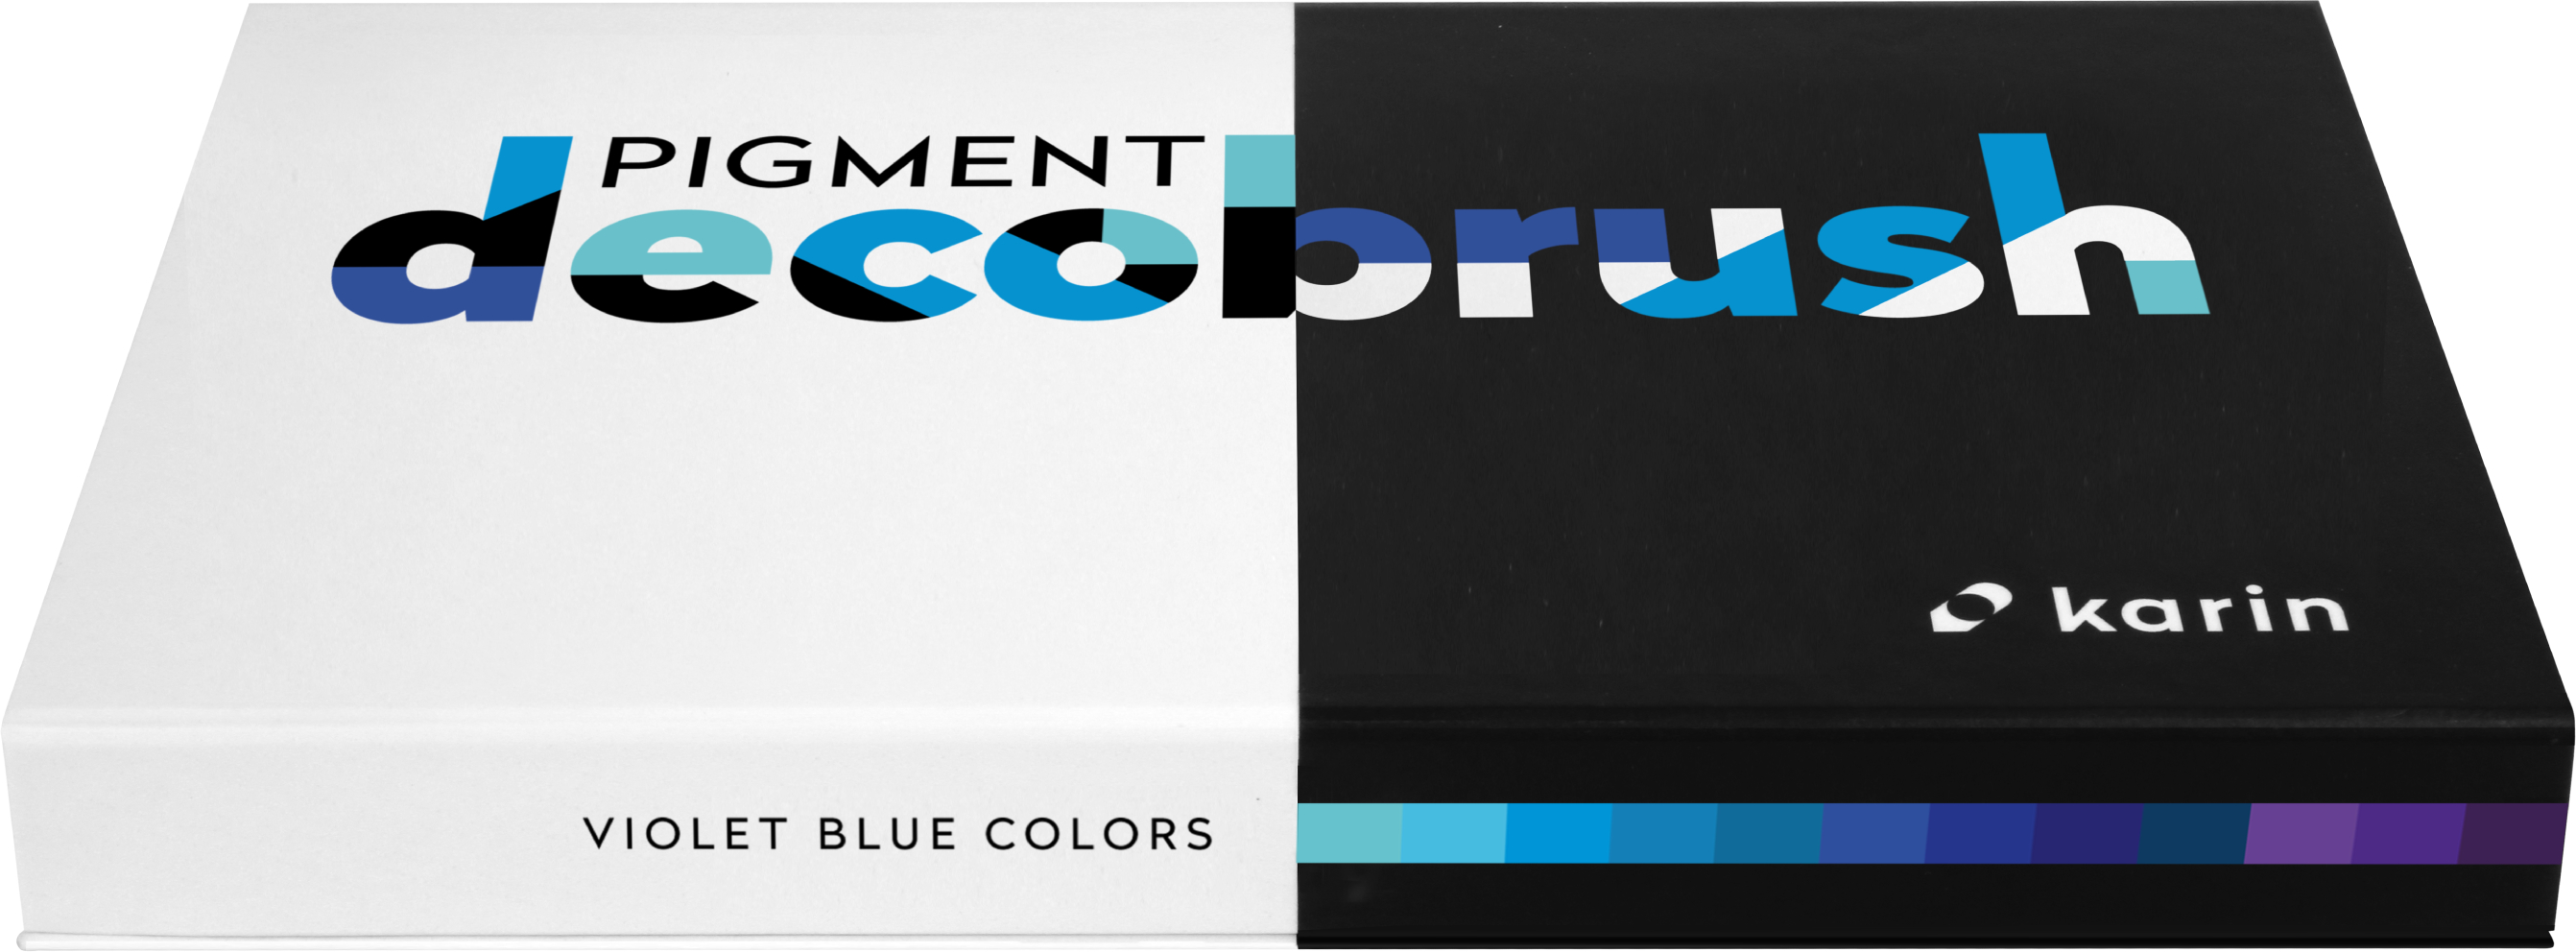 KARIN Pigment Deco Brush 29C5 Violet-Blue Set 12 couleurs